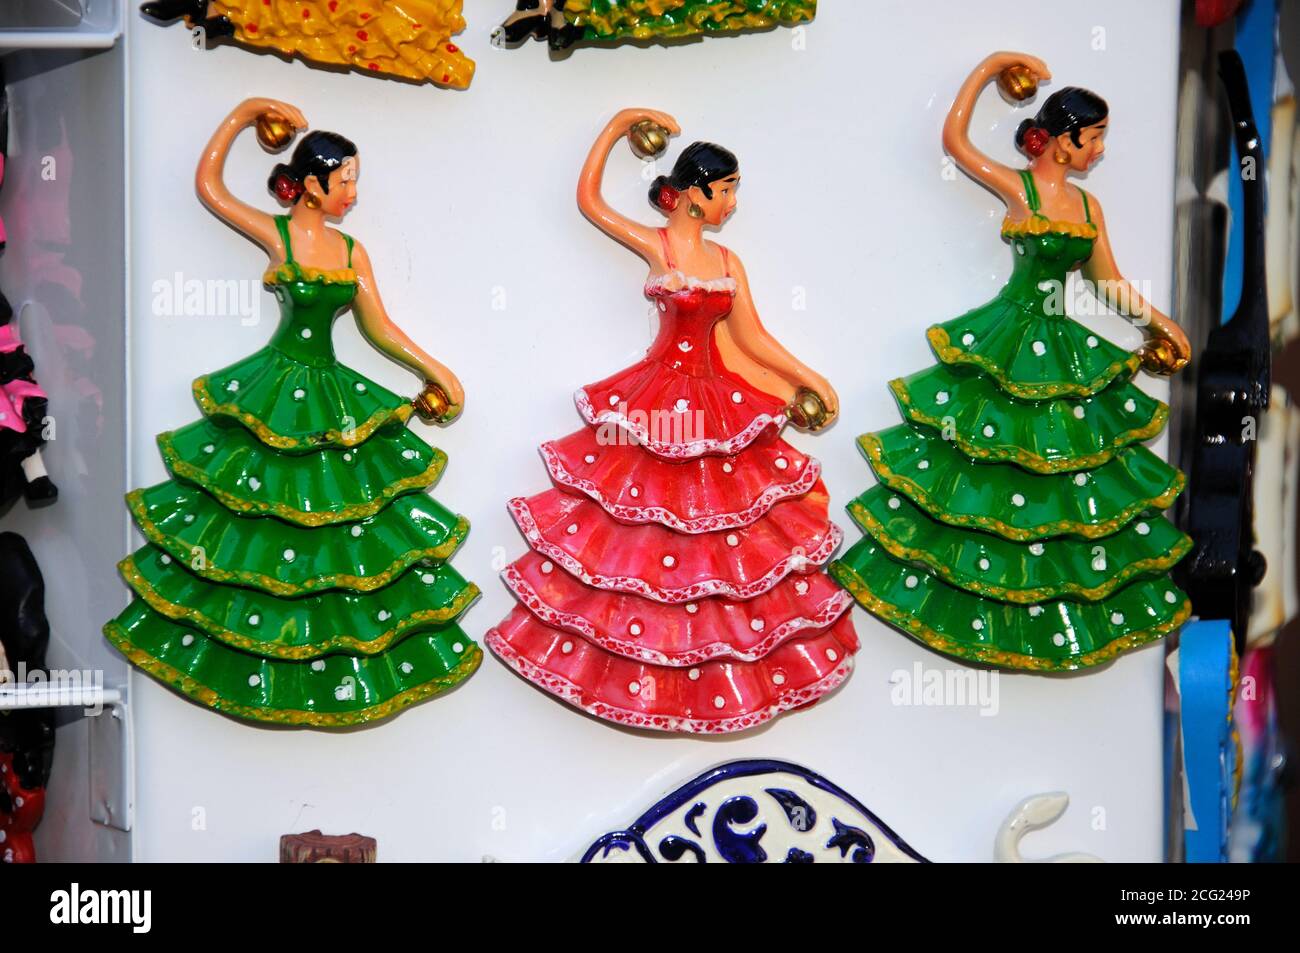 Souvenir danseur flamenco réfrigérateur aimants, Malaga, Espagne. Banque D'Images